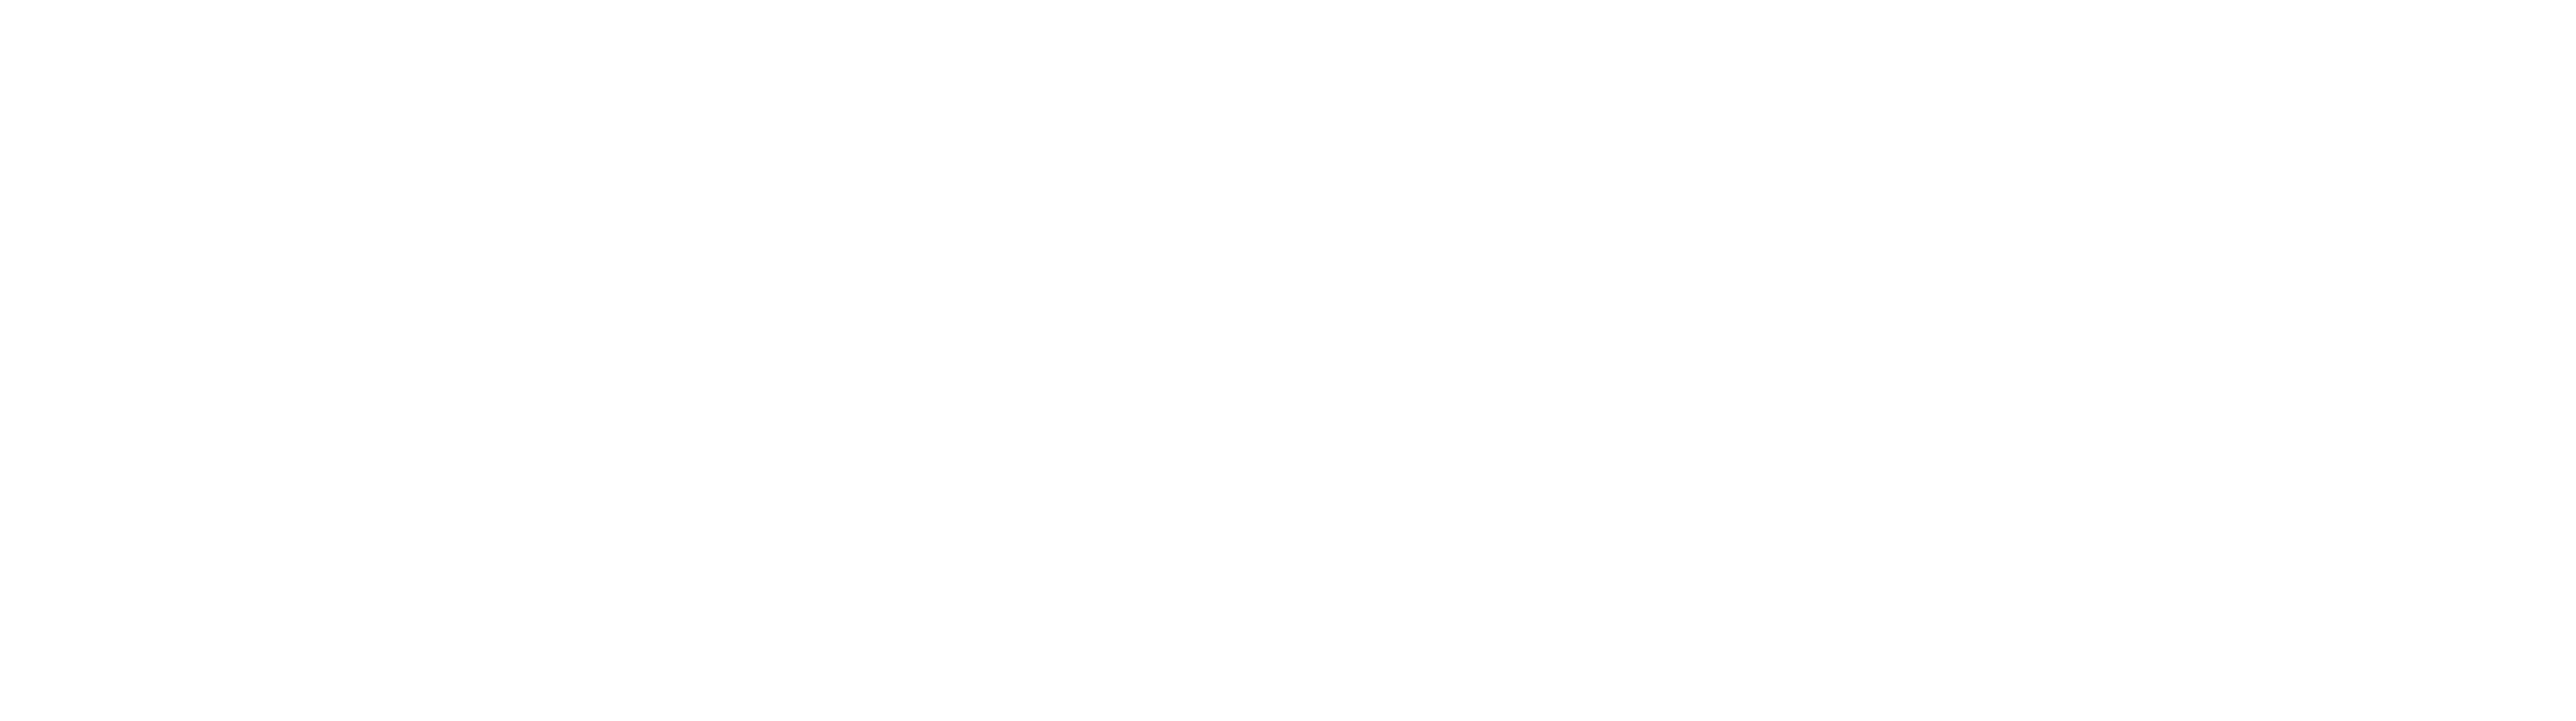 COPARMEX Estado de México